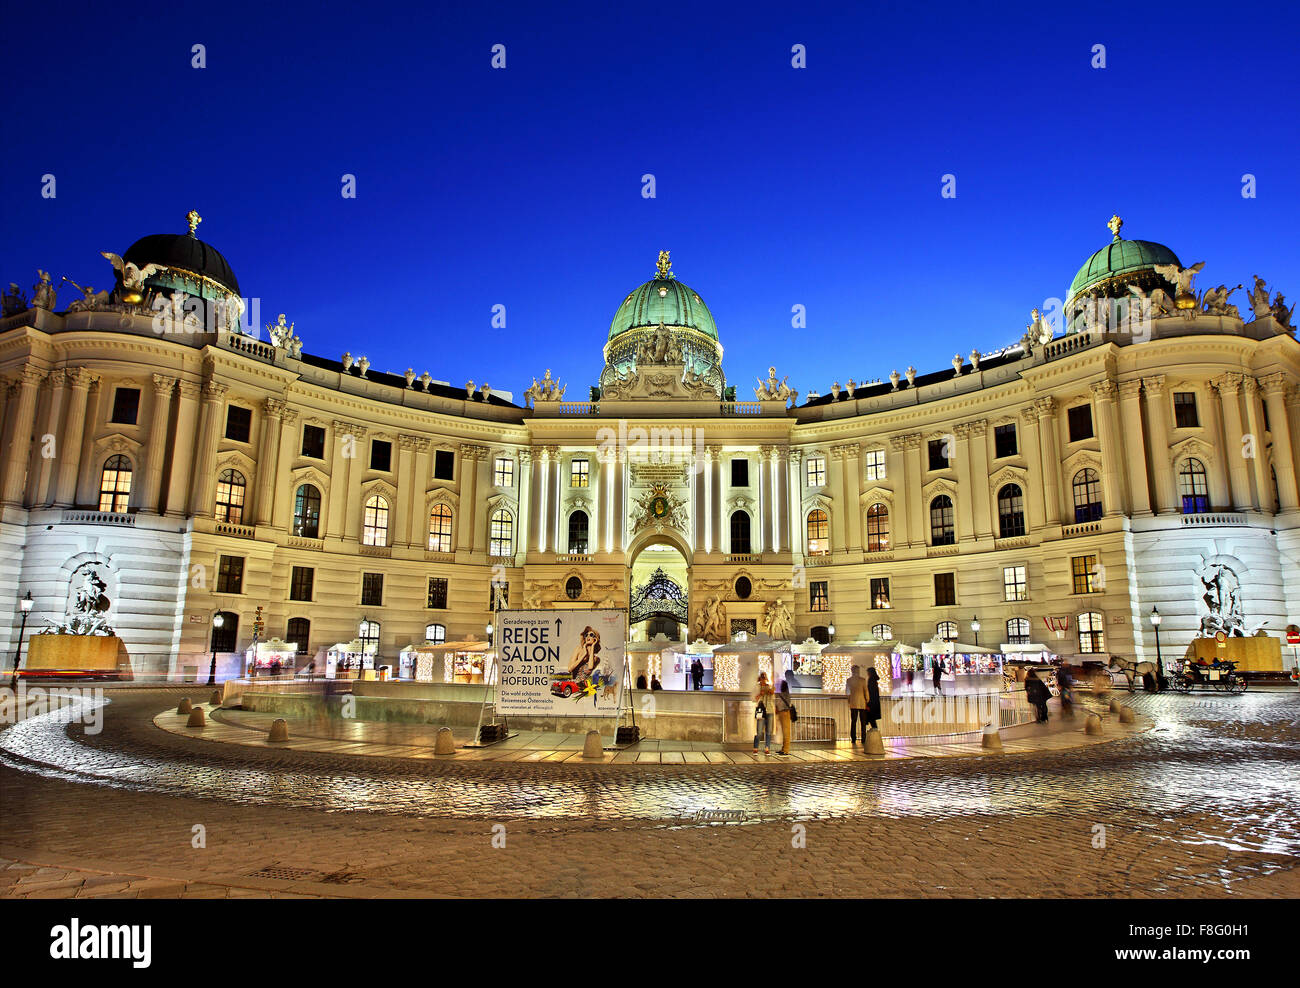 Ansicht der Hofburg, dem kaiserlichen Palast der Habsburger, von Michaelerplatz Wien, Österreich Stockfoto